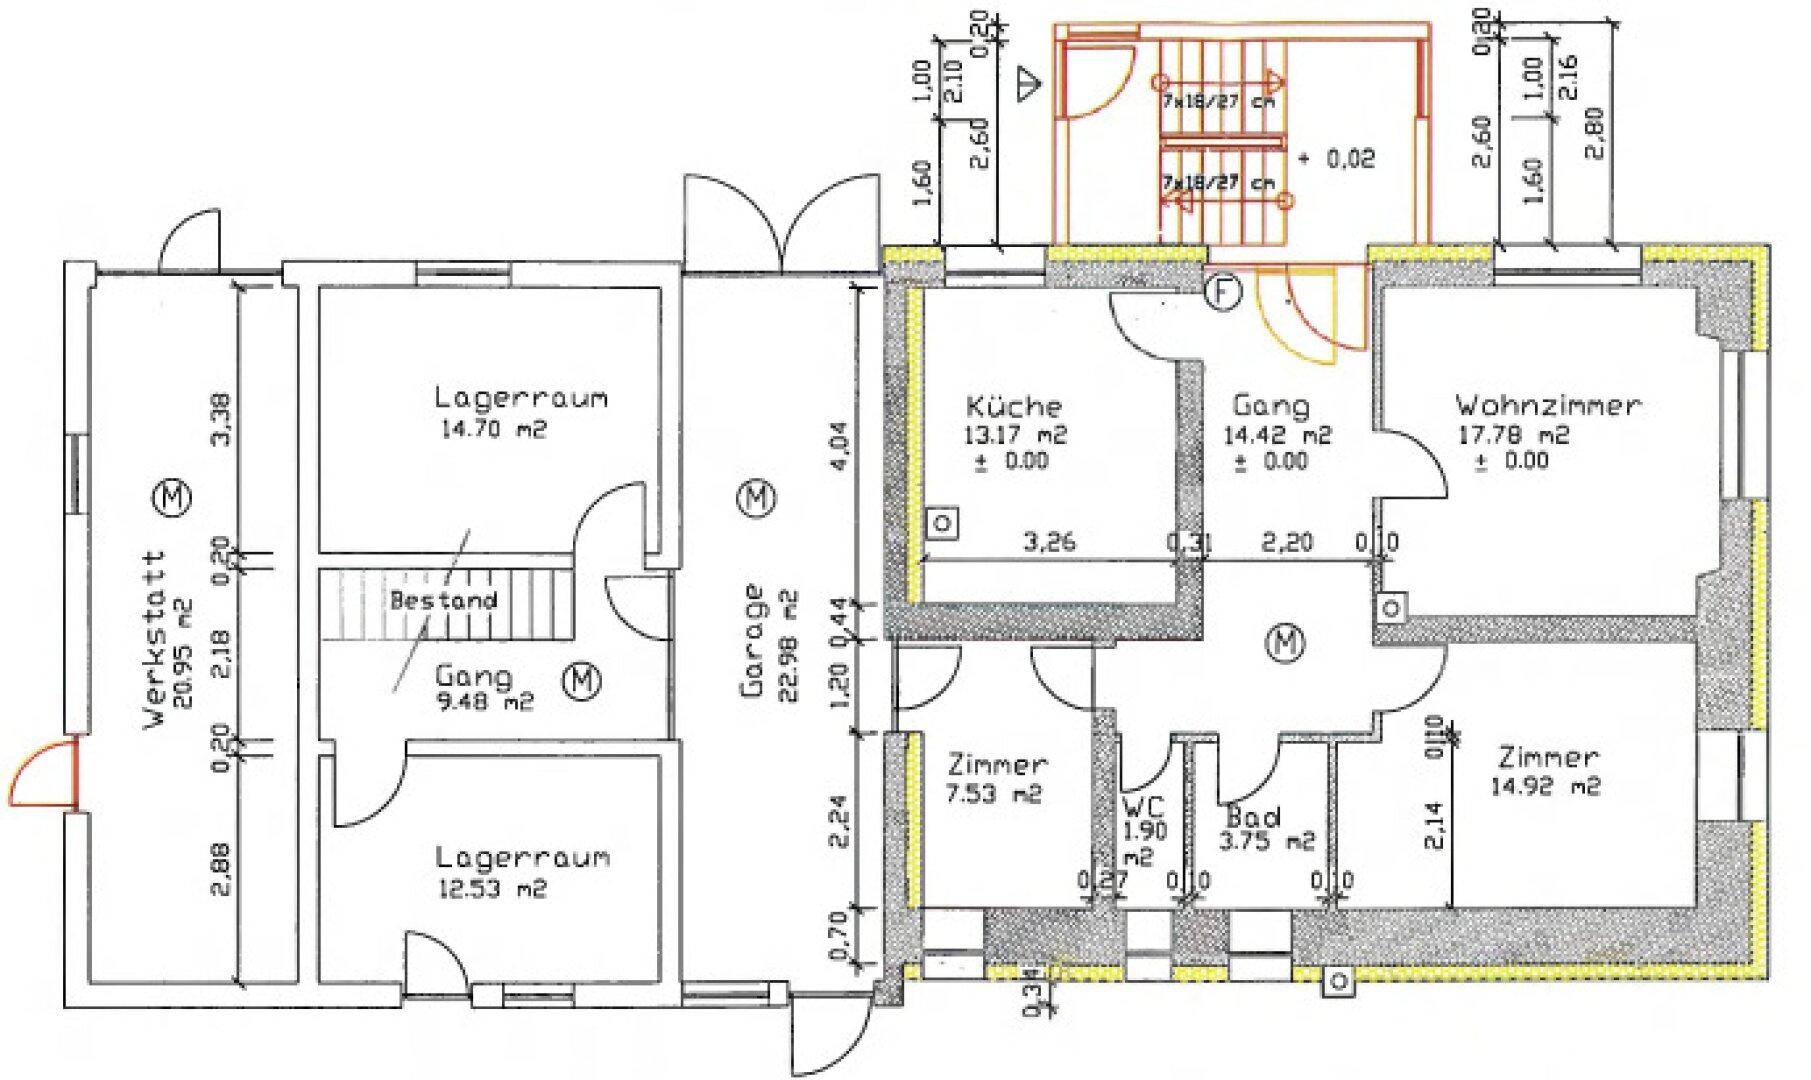 Plan Erdgeschoss (Wohnung 1 & GarageWerkstatt)